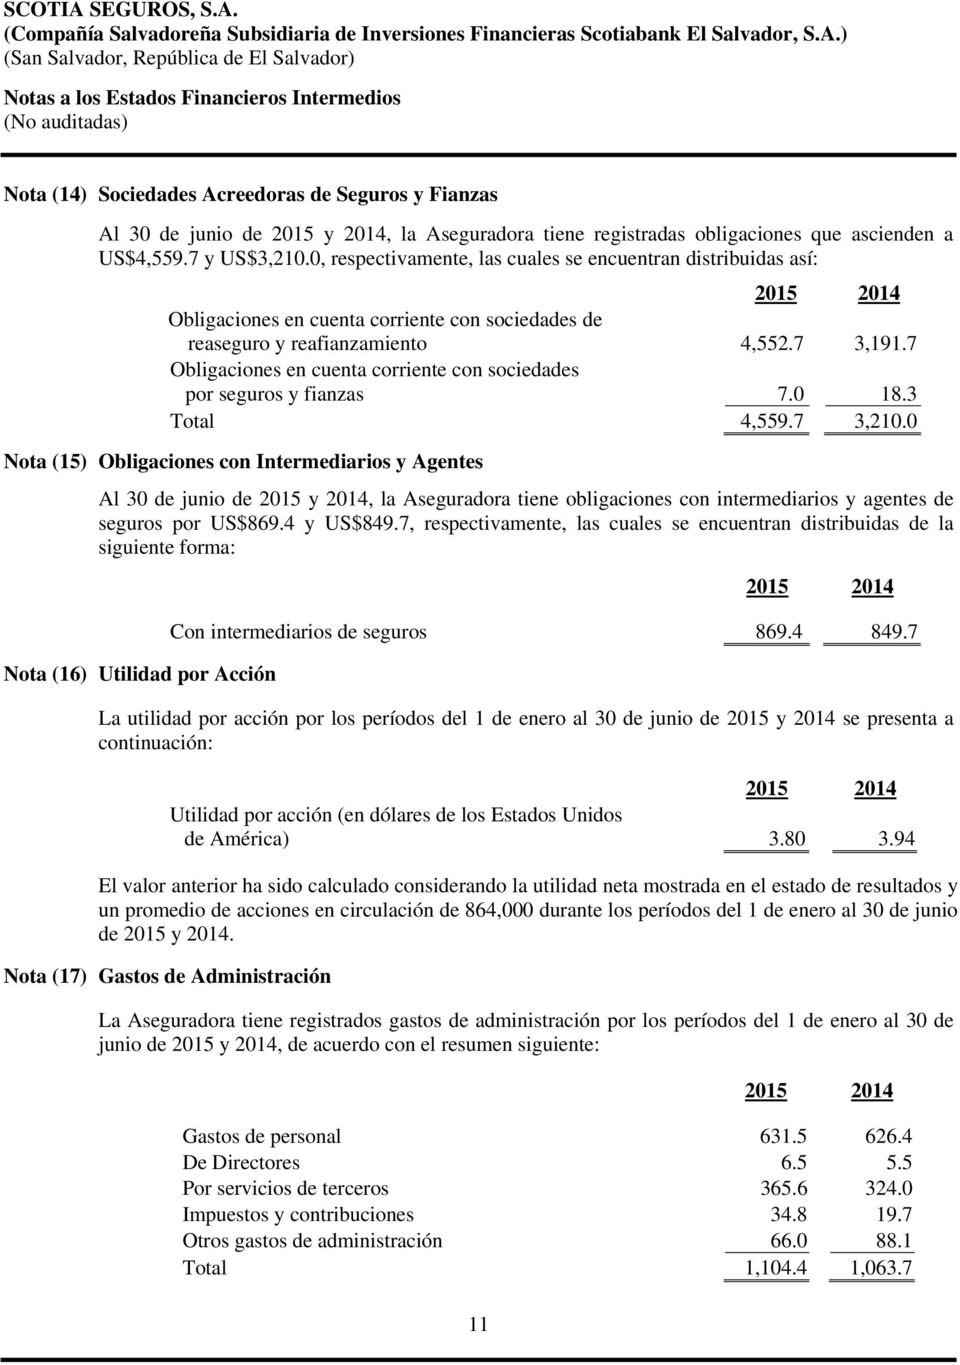 7 Obligaciones en cuenta corriente con sociedades por seguros y fianzas 7.0 18.3 Total 4,559.7 3,210.